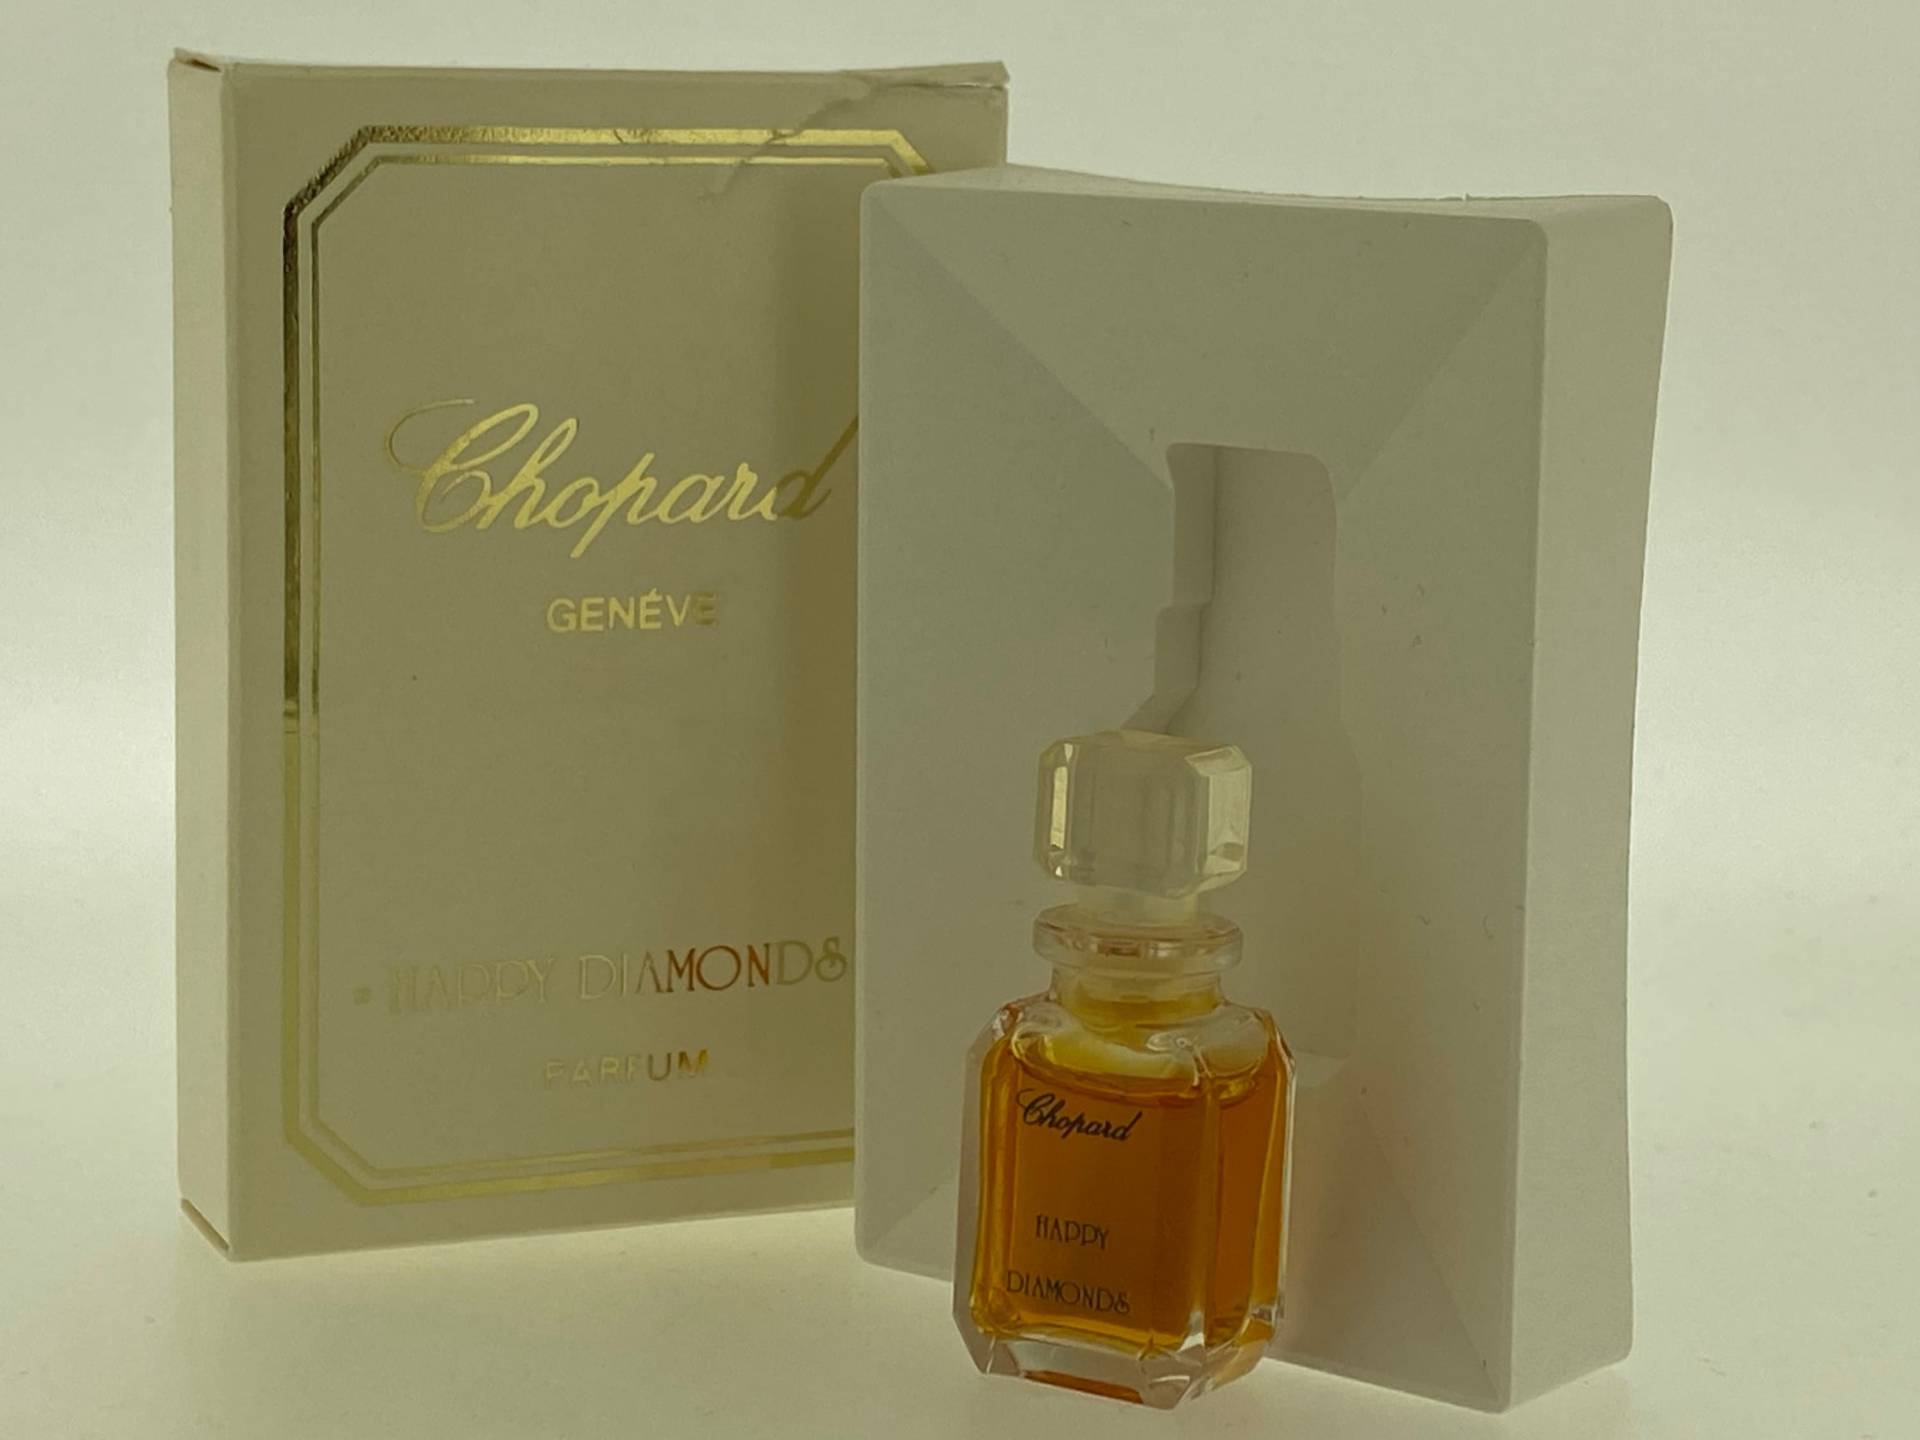 Happy Diamonds Chopard Geneve 1986 Parfum Miniatur 2, 5 Ml von VintagePerfumeShop